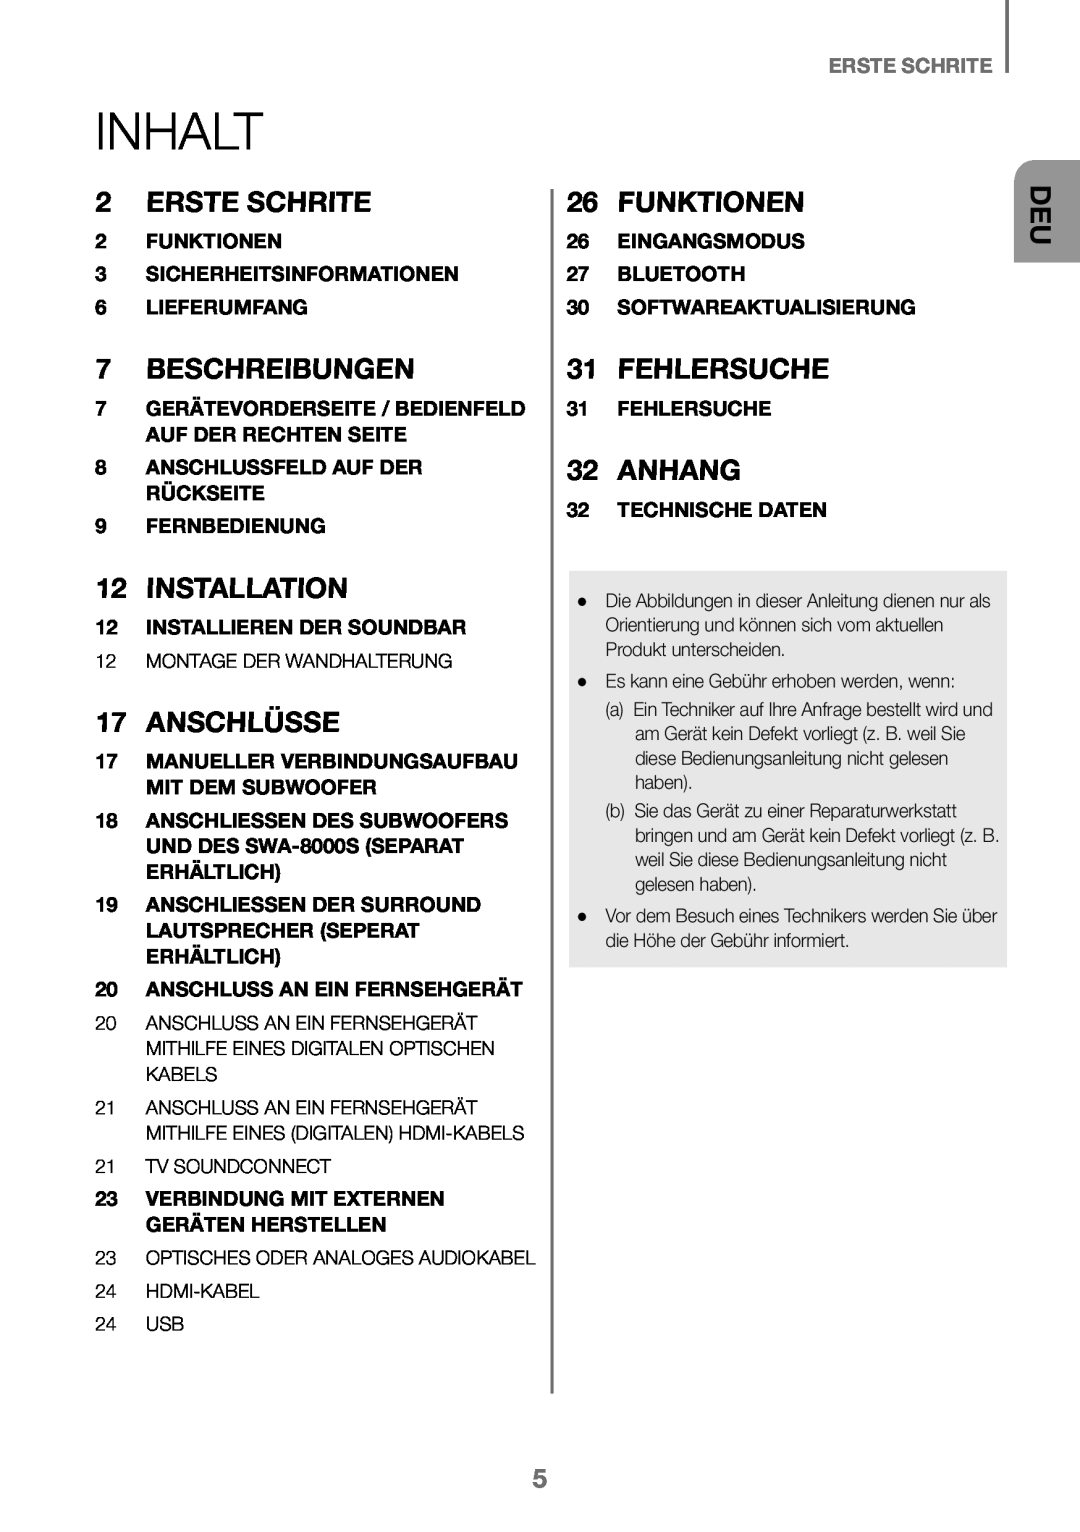 Samsung HW-K450/ZF manual Inhalt, Erste Schrite, Beschreibungen, Anschlüsse, Funktionen, Fehlersuche, Anhang, Installation 